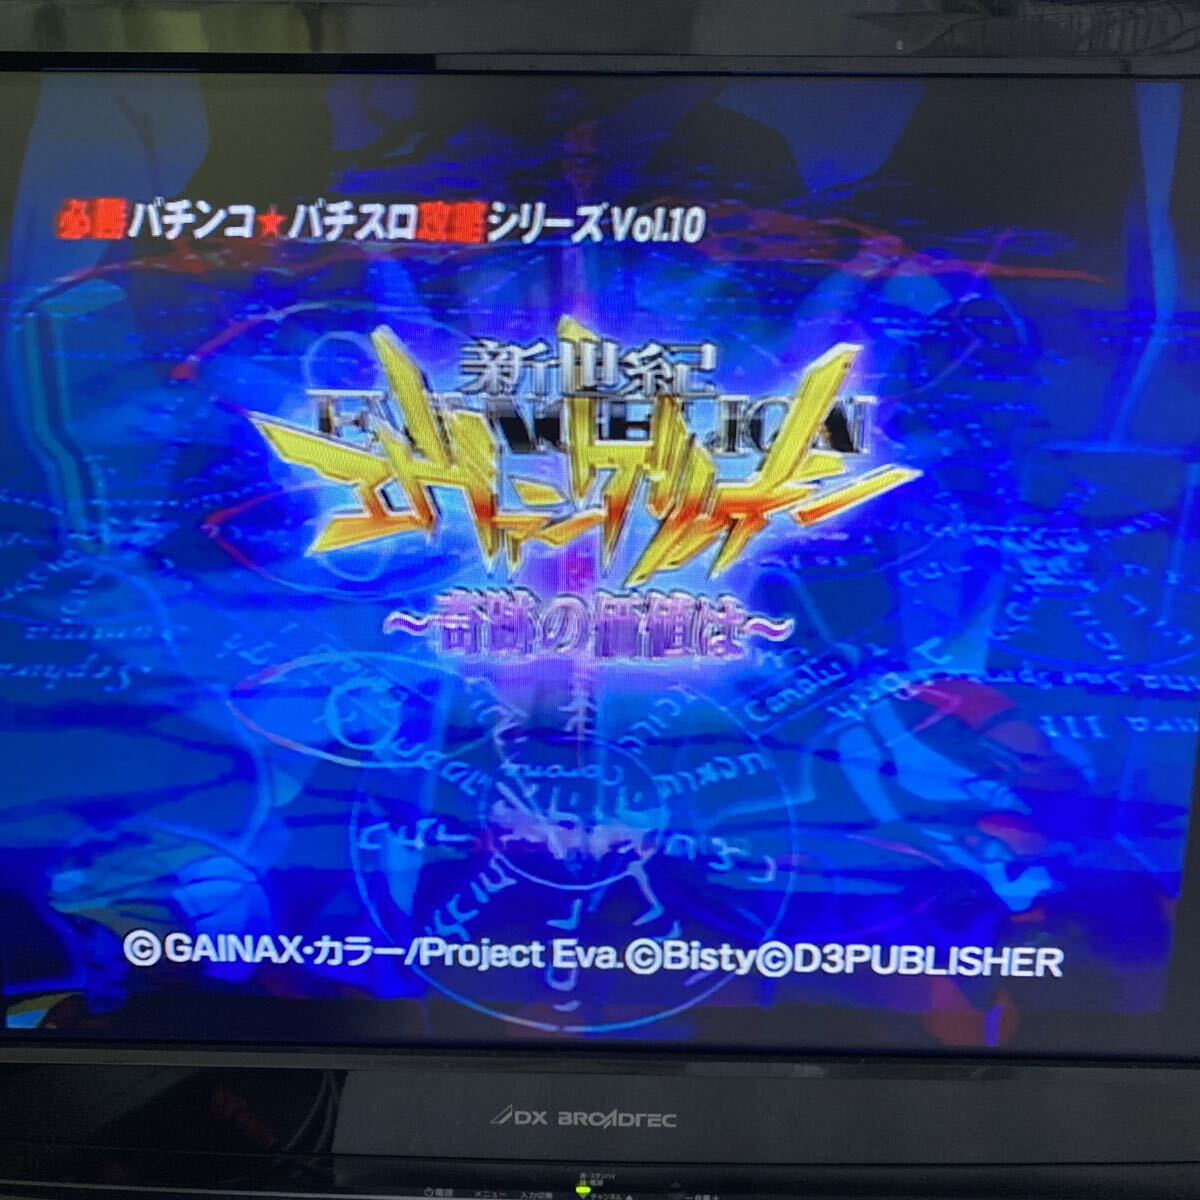  обязательно . патинко * игровой автомат .. серии Vol.10 CR Neon Genesis Evangelion ~ чудесный стоимость коэффициент ~ PlayStation 2 soft 